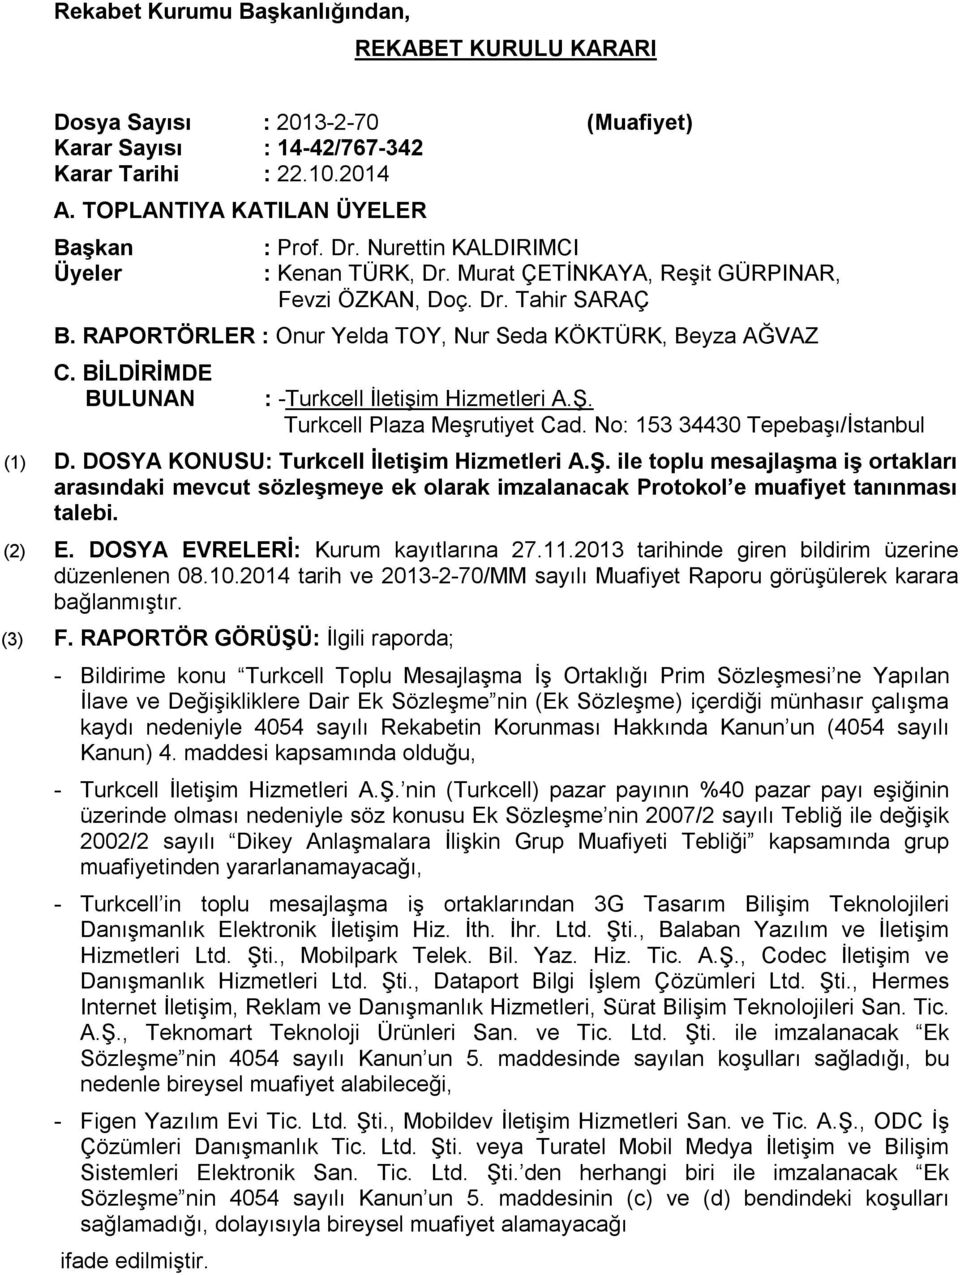 BİLDİRİMDE BULUNAN : -Turkcell İletişim Hizmetleri A.Ş. Turkcell Plaza Meşrutiyet Cad. No: 153 34430 Tepebaşı/İstanbul (1) D. DOSYA KONUSU: Turkcell İletişim Hizmetleri A.Ş. ile toplu mesajlaşma iş ortakları arasındaki mevcut sözleşmeye ek olarak imzalanacak Protokol e muafiyet tanınması talebi.